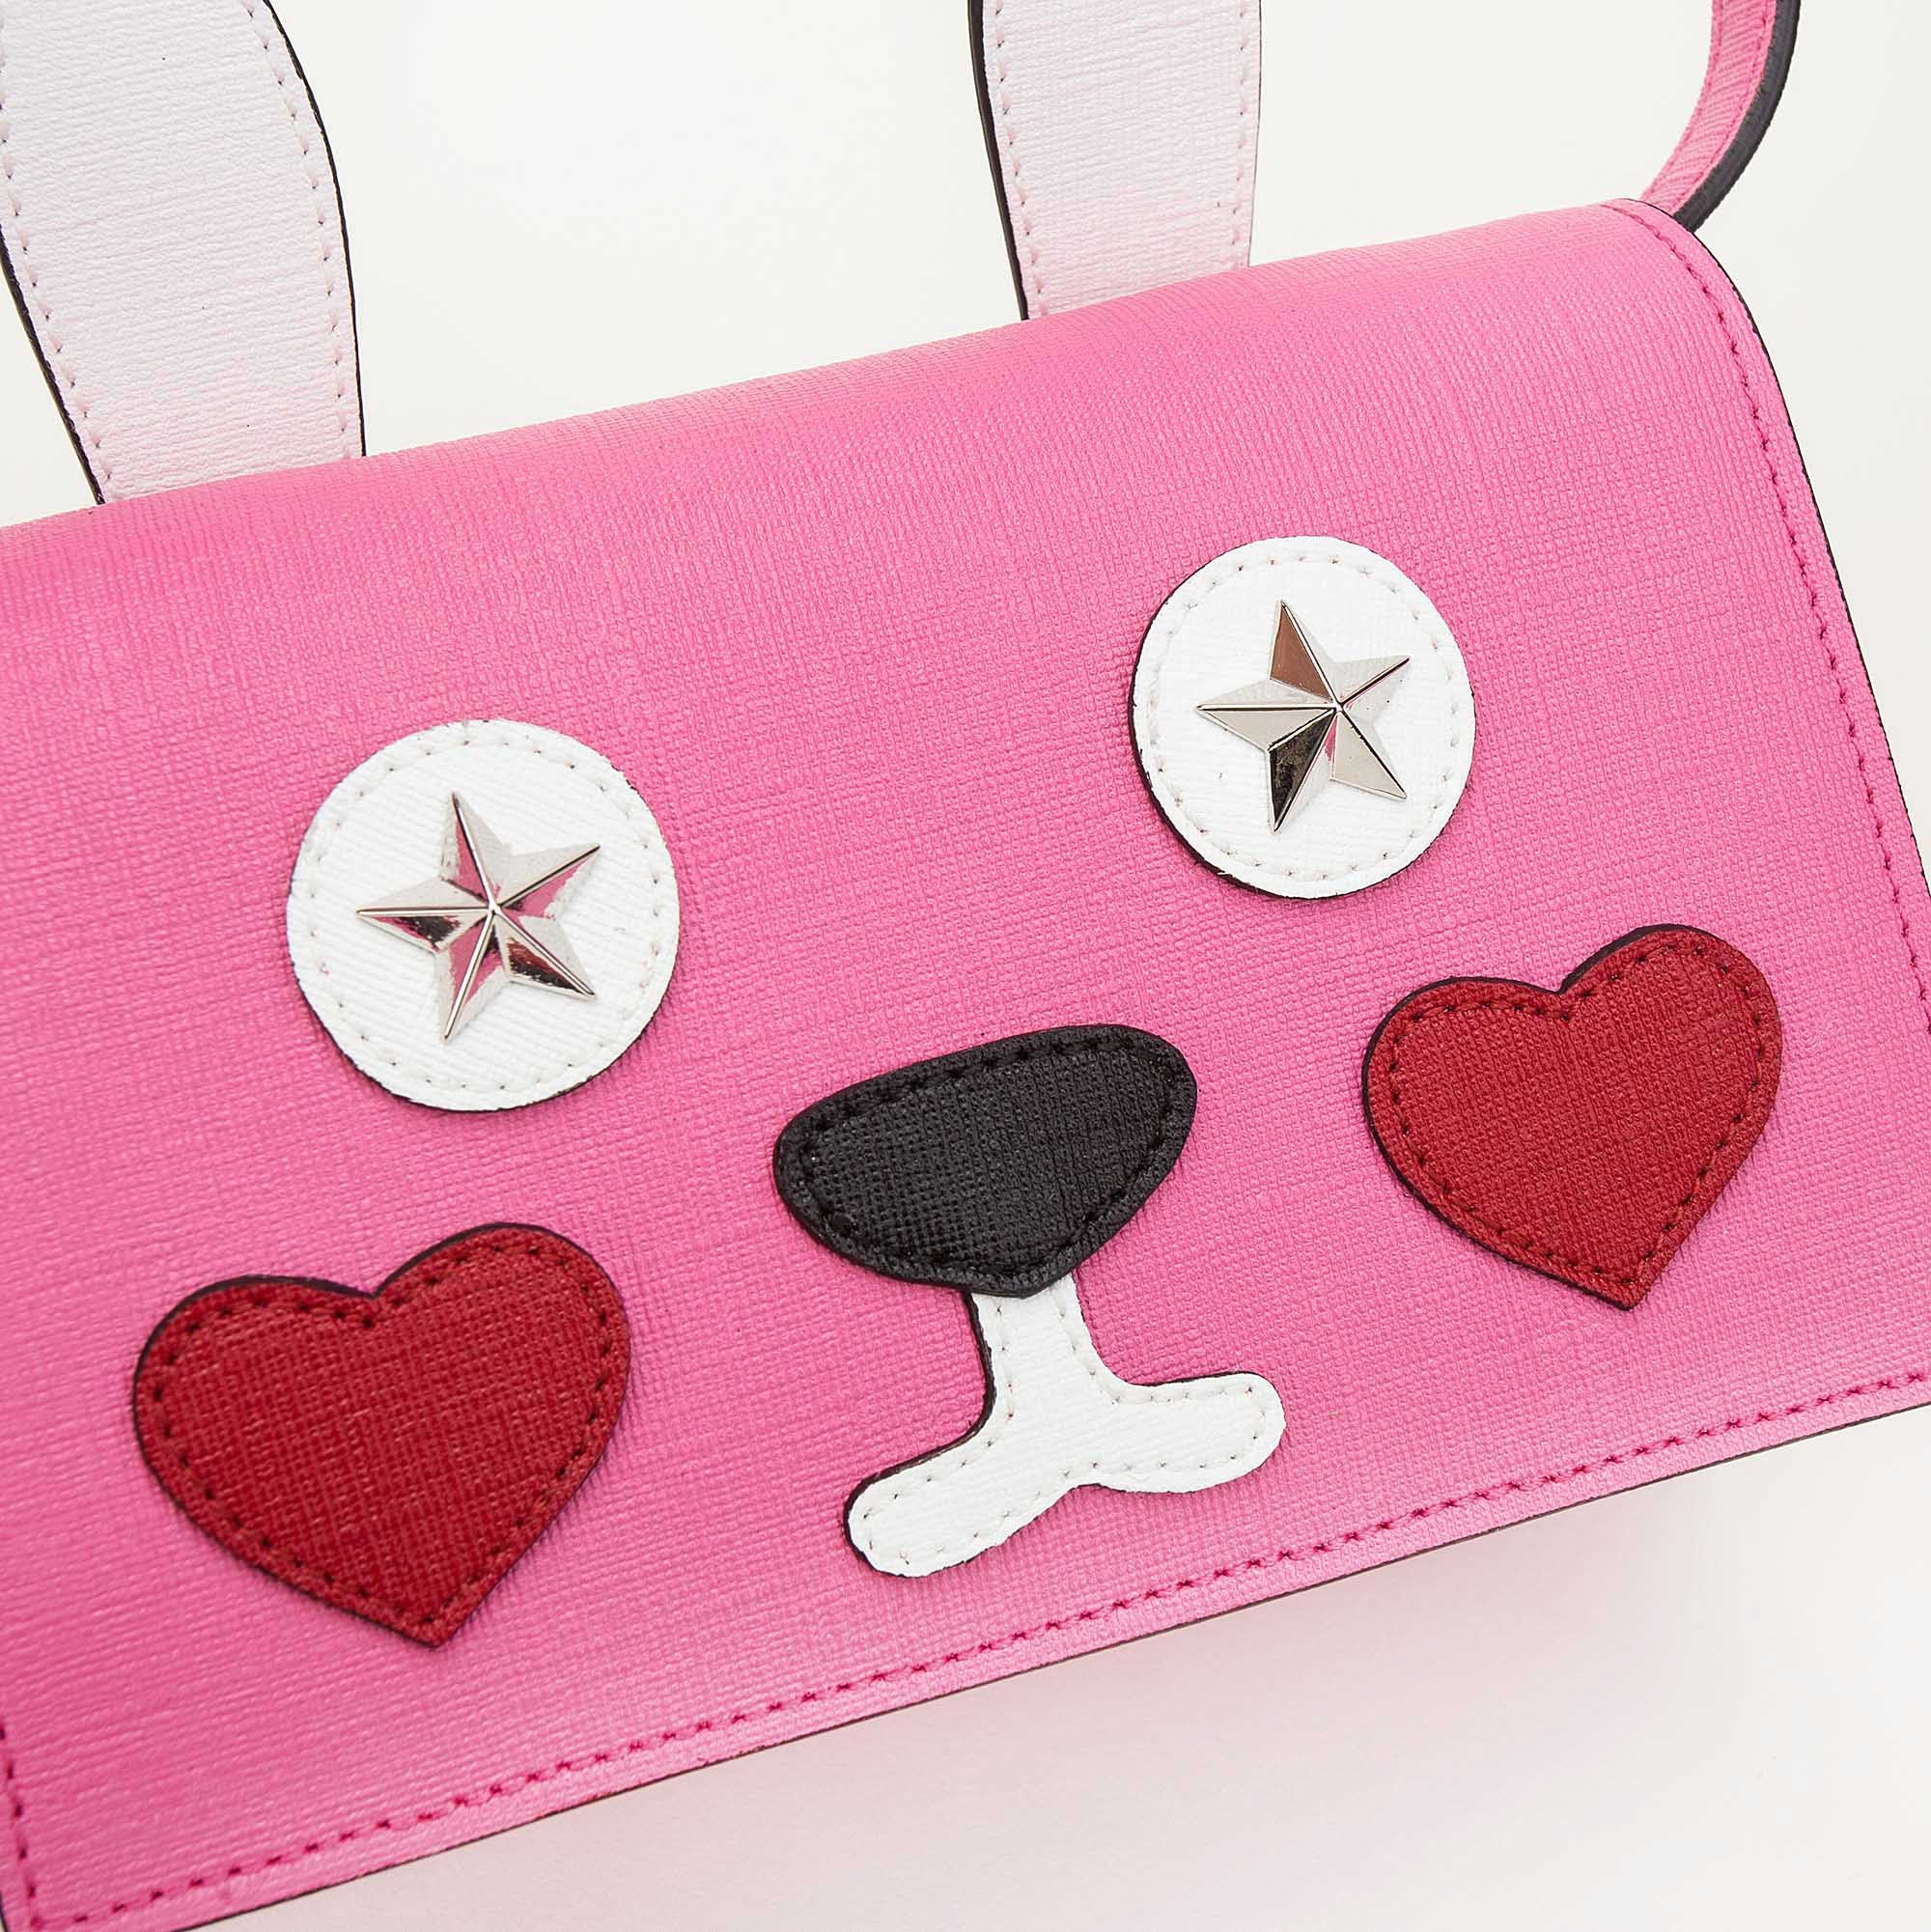 Girls Pink Bunny Bag